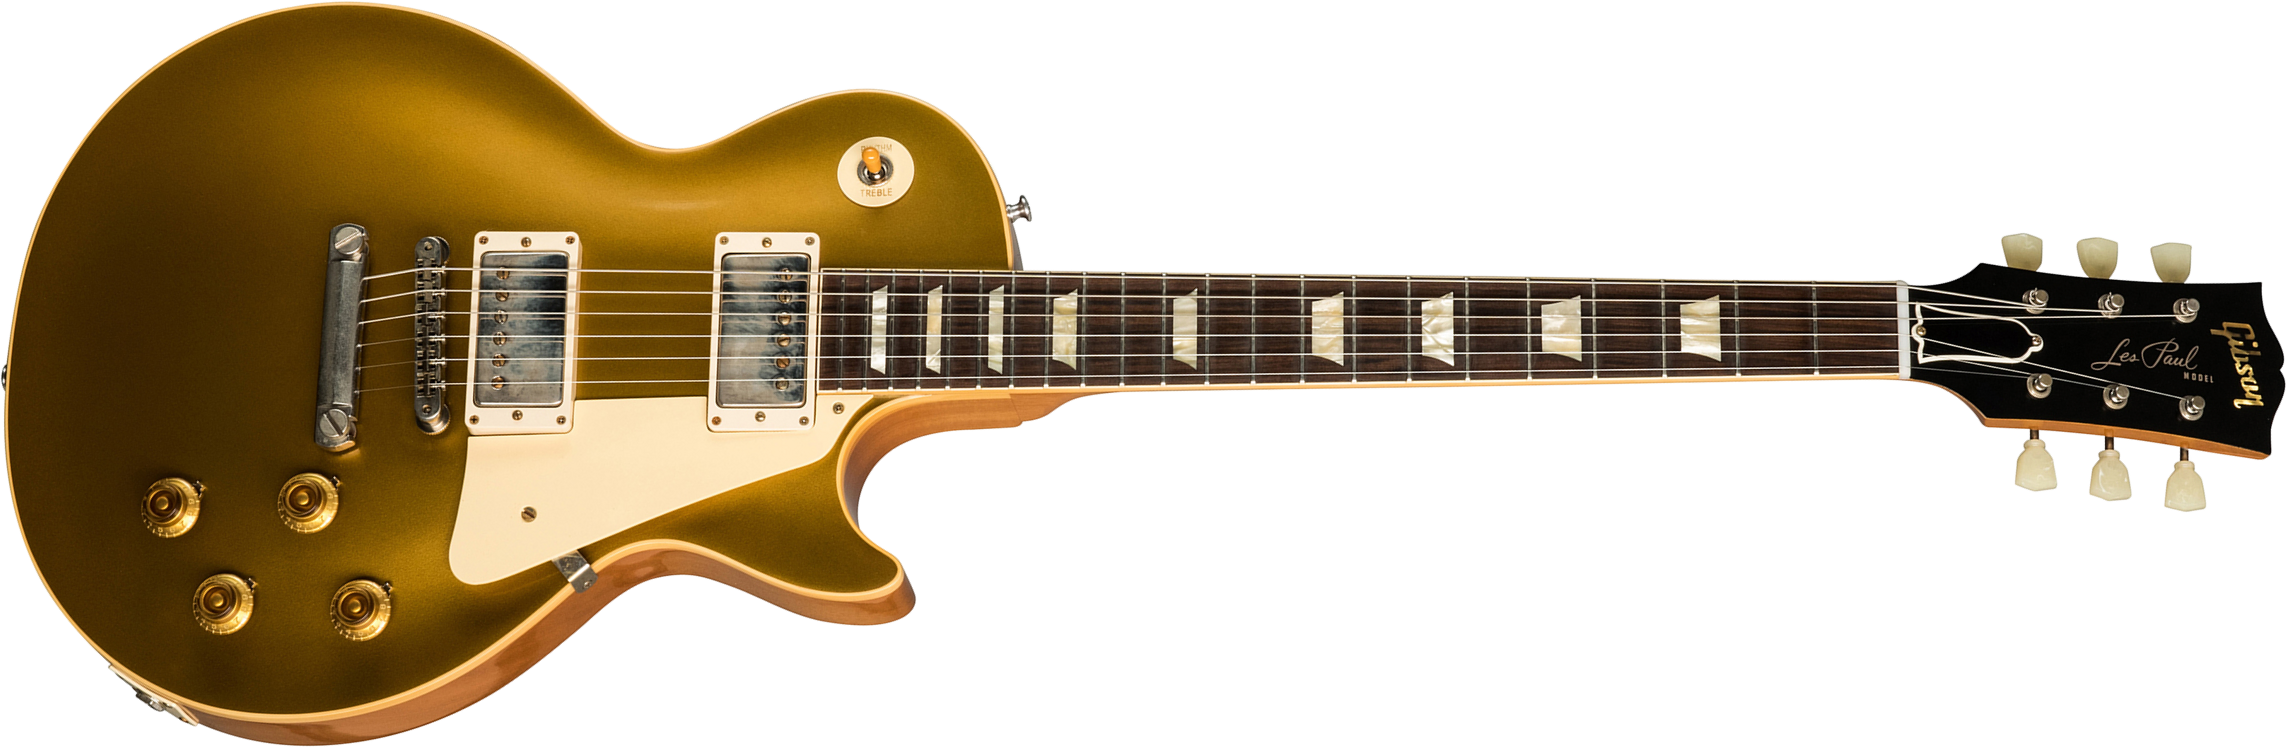 Gibson Custom Shop Les Paul Goldtop 1957 Reissue 2019 2h Ht Rw - Vos Double Gold - Enkel gesneden elektrische gitaar - Main picture